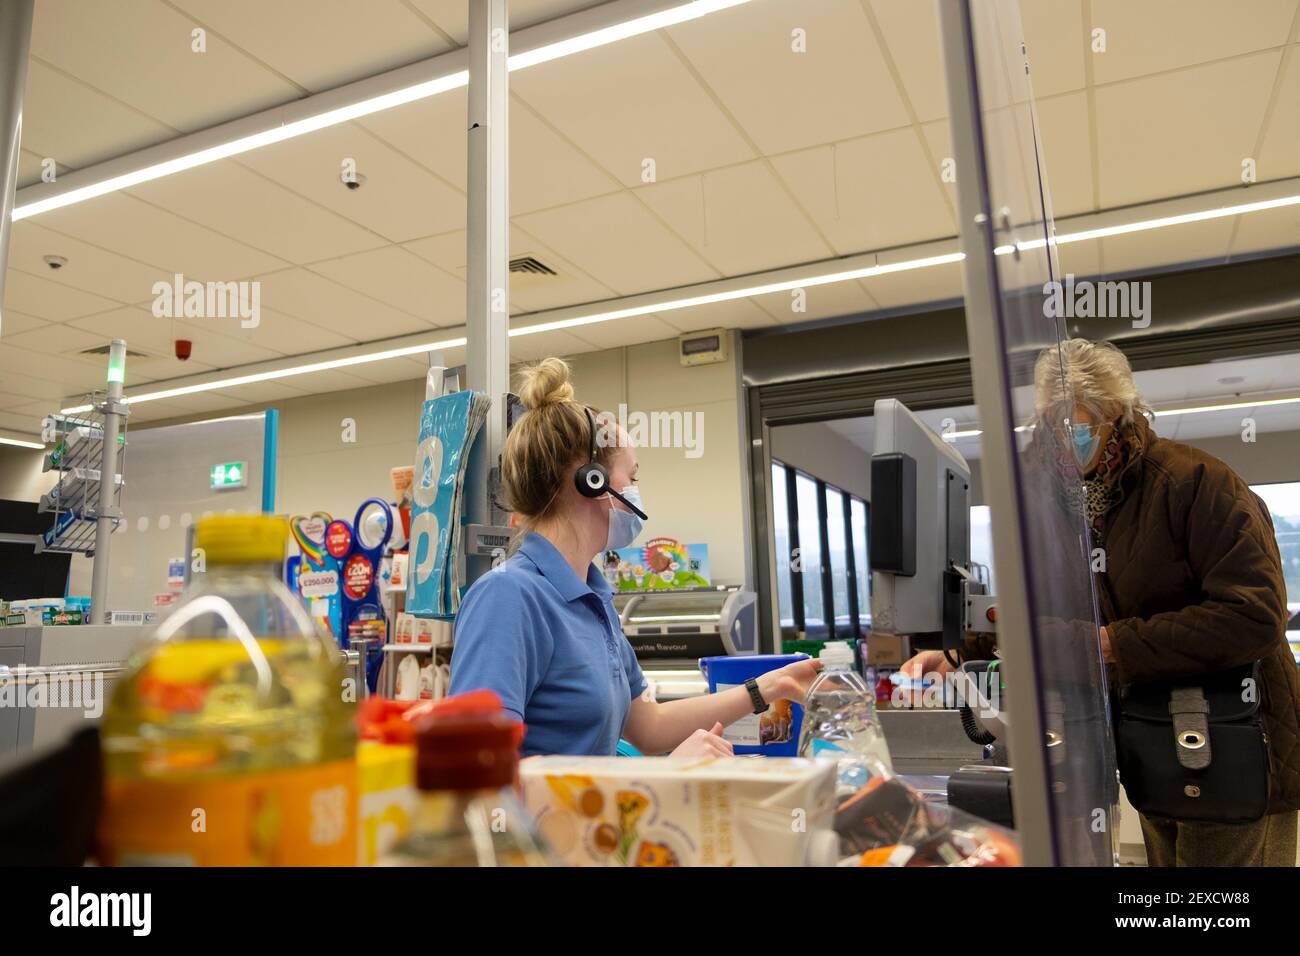 Shopper Customer Worker trägt Covid Facemask an der Co Op Supermarkt Kasse Theke Food Shopping während Coronavirus im britischen Geschäft BRITAIN KATHY DEWITT Stockfoto